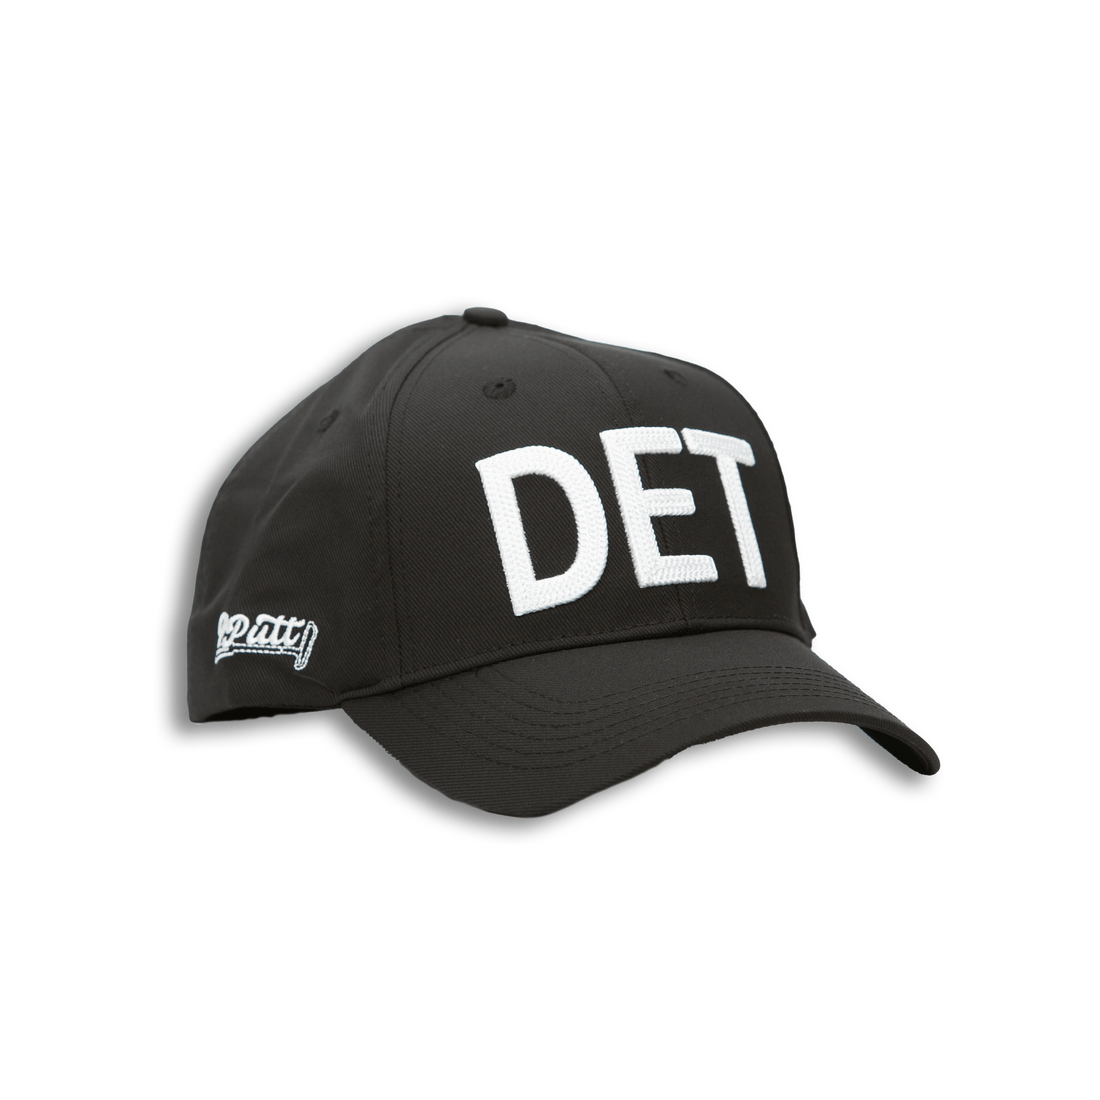 Detroit Hat - 2putt